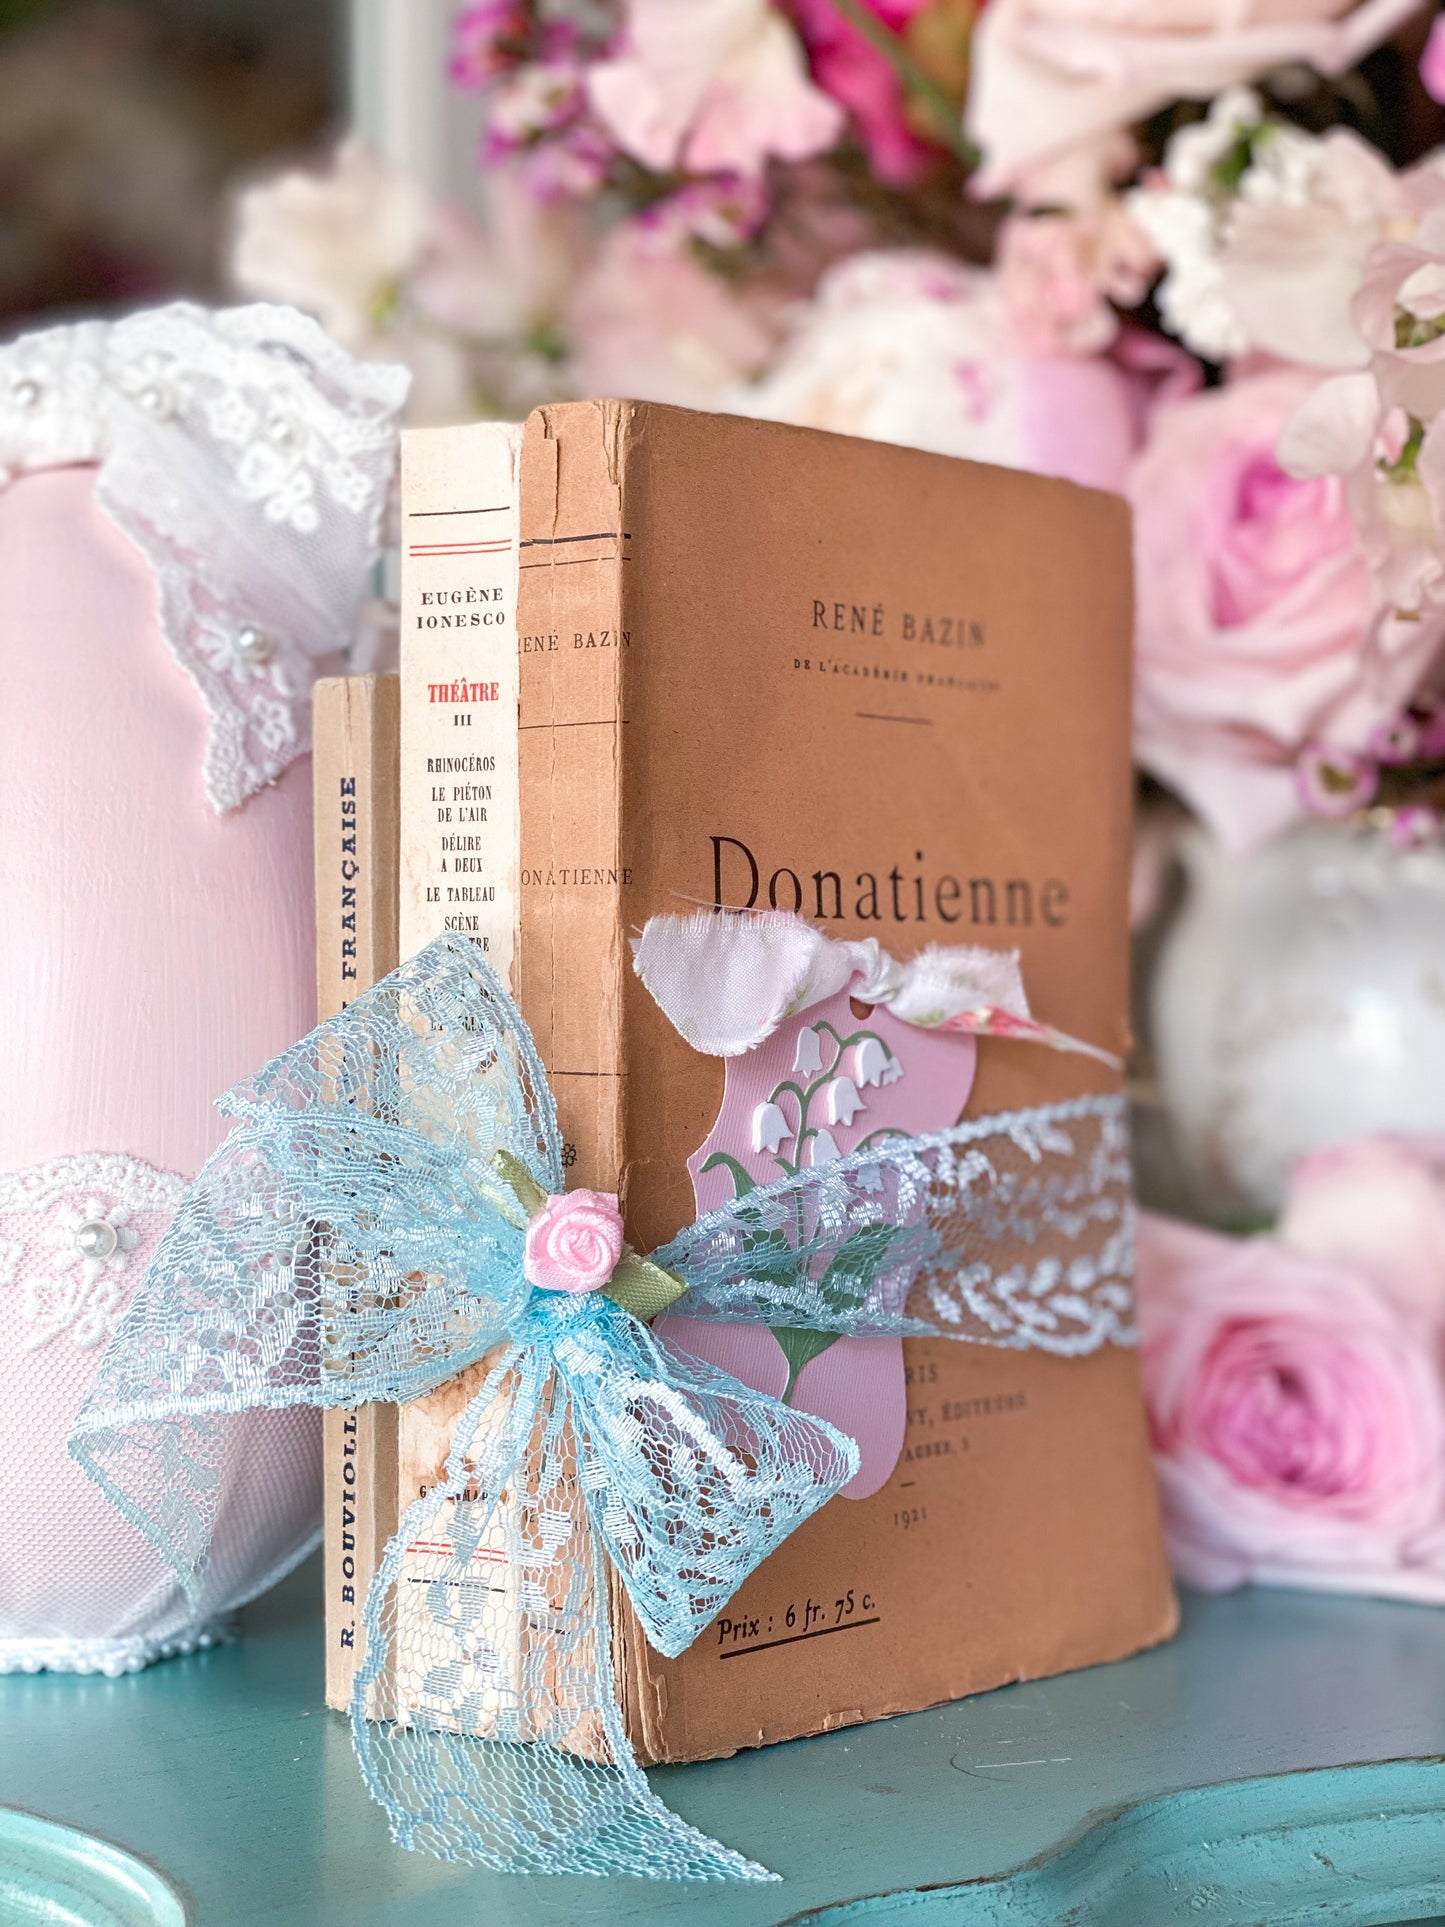 Libro en rústica francés de libros rosas y crema.